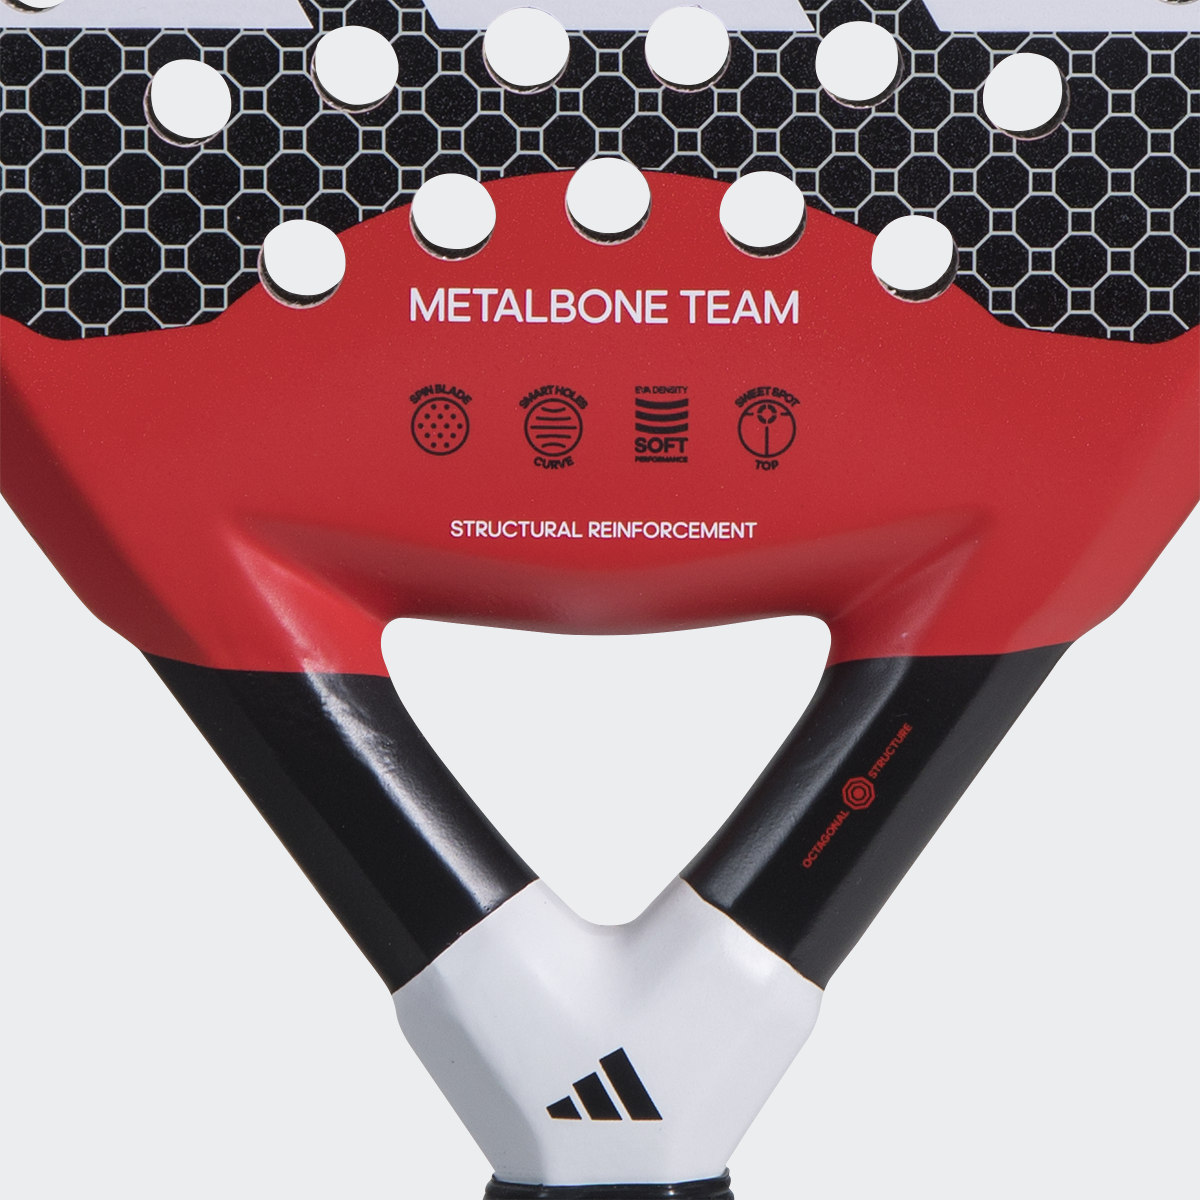 Adidas Metalbone Team. 6